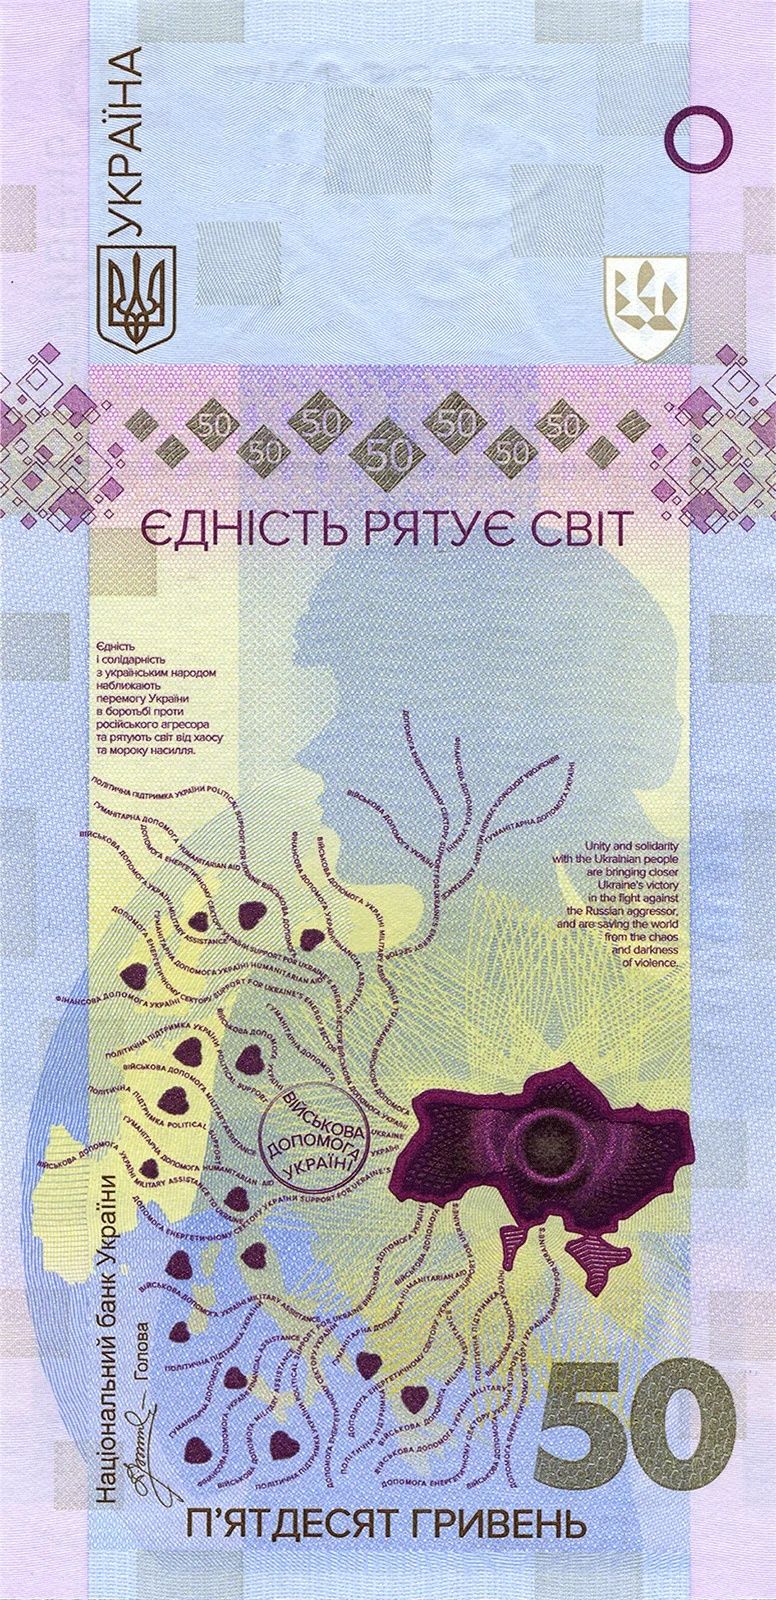 Банкнота єдність рятує світ 50 грн інші сувенірні монети в описі